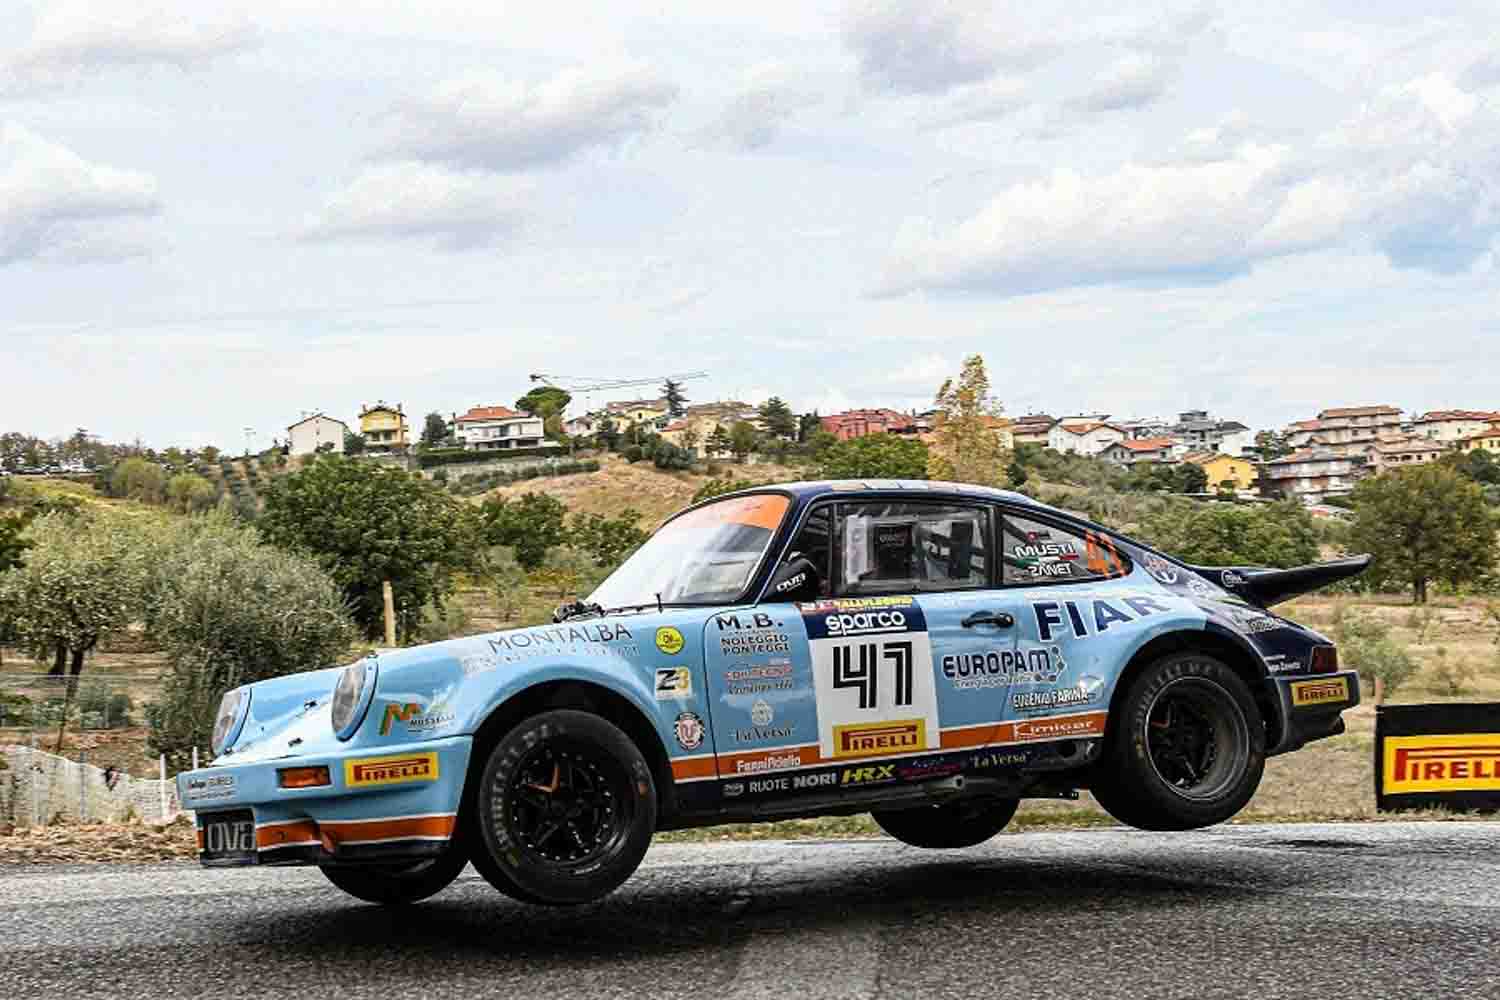 Musti zanet con una Porsche 911 RS si sono aggiudicati il rally Historic del Rallylegend